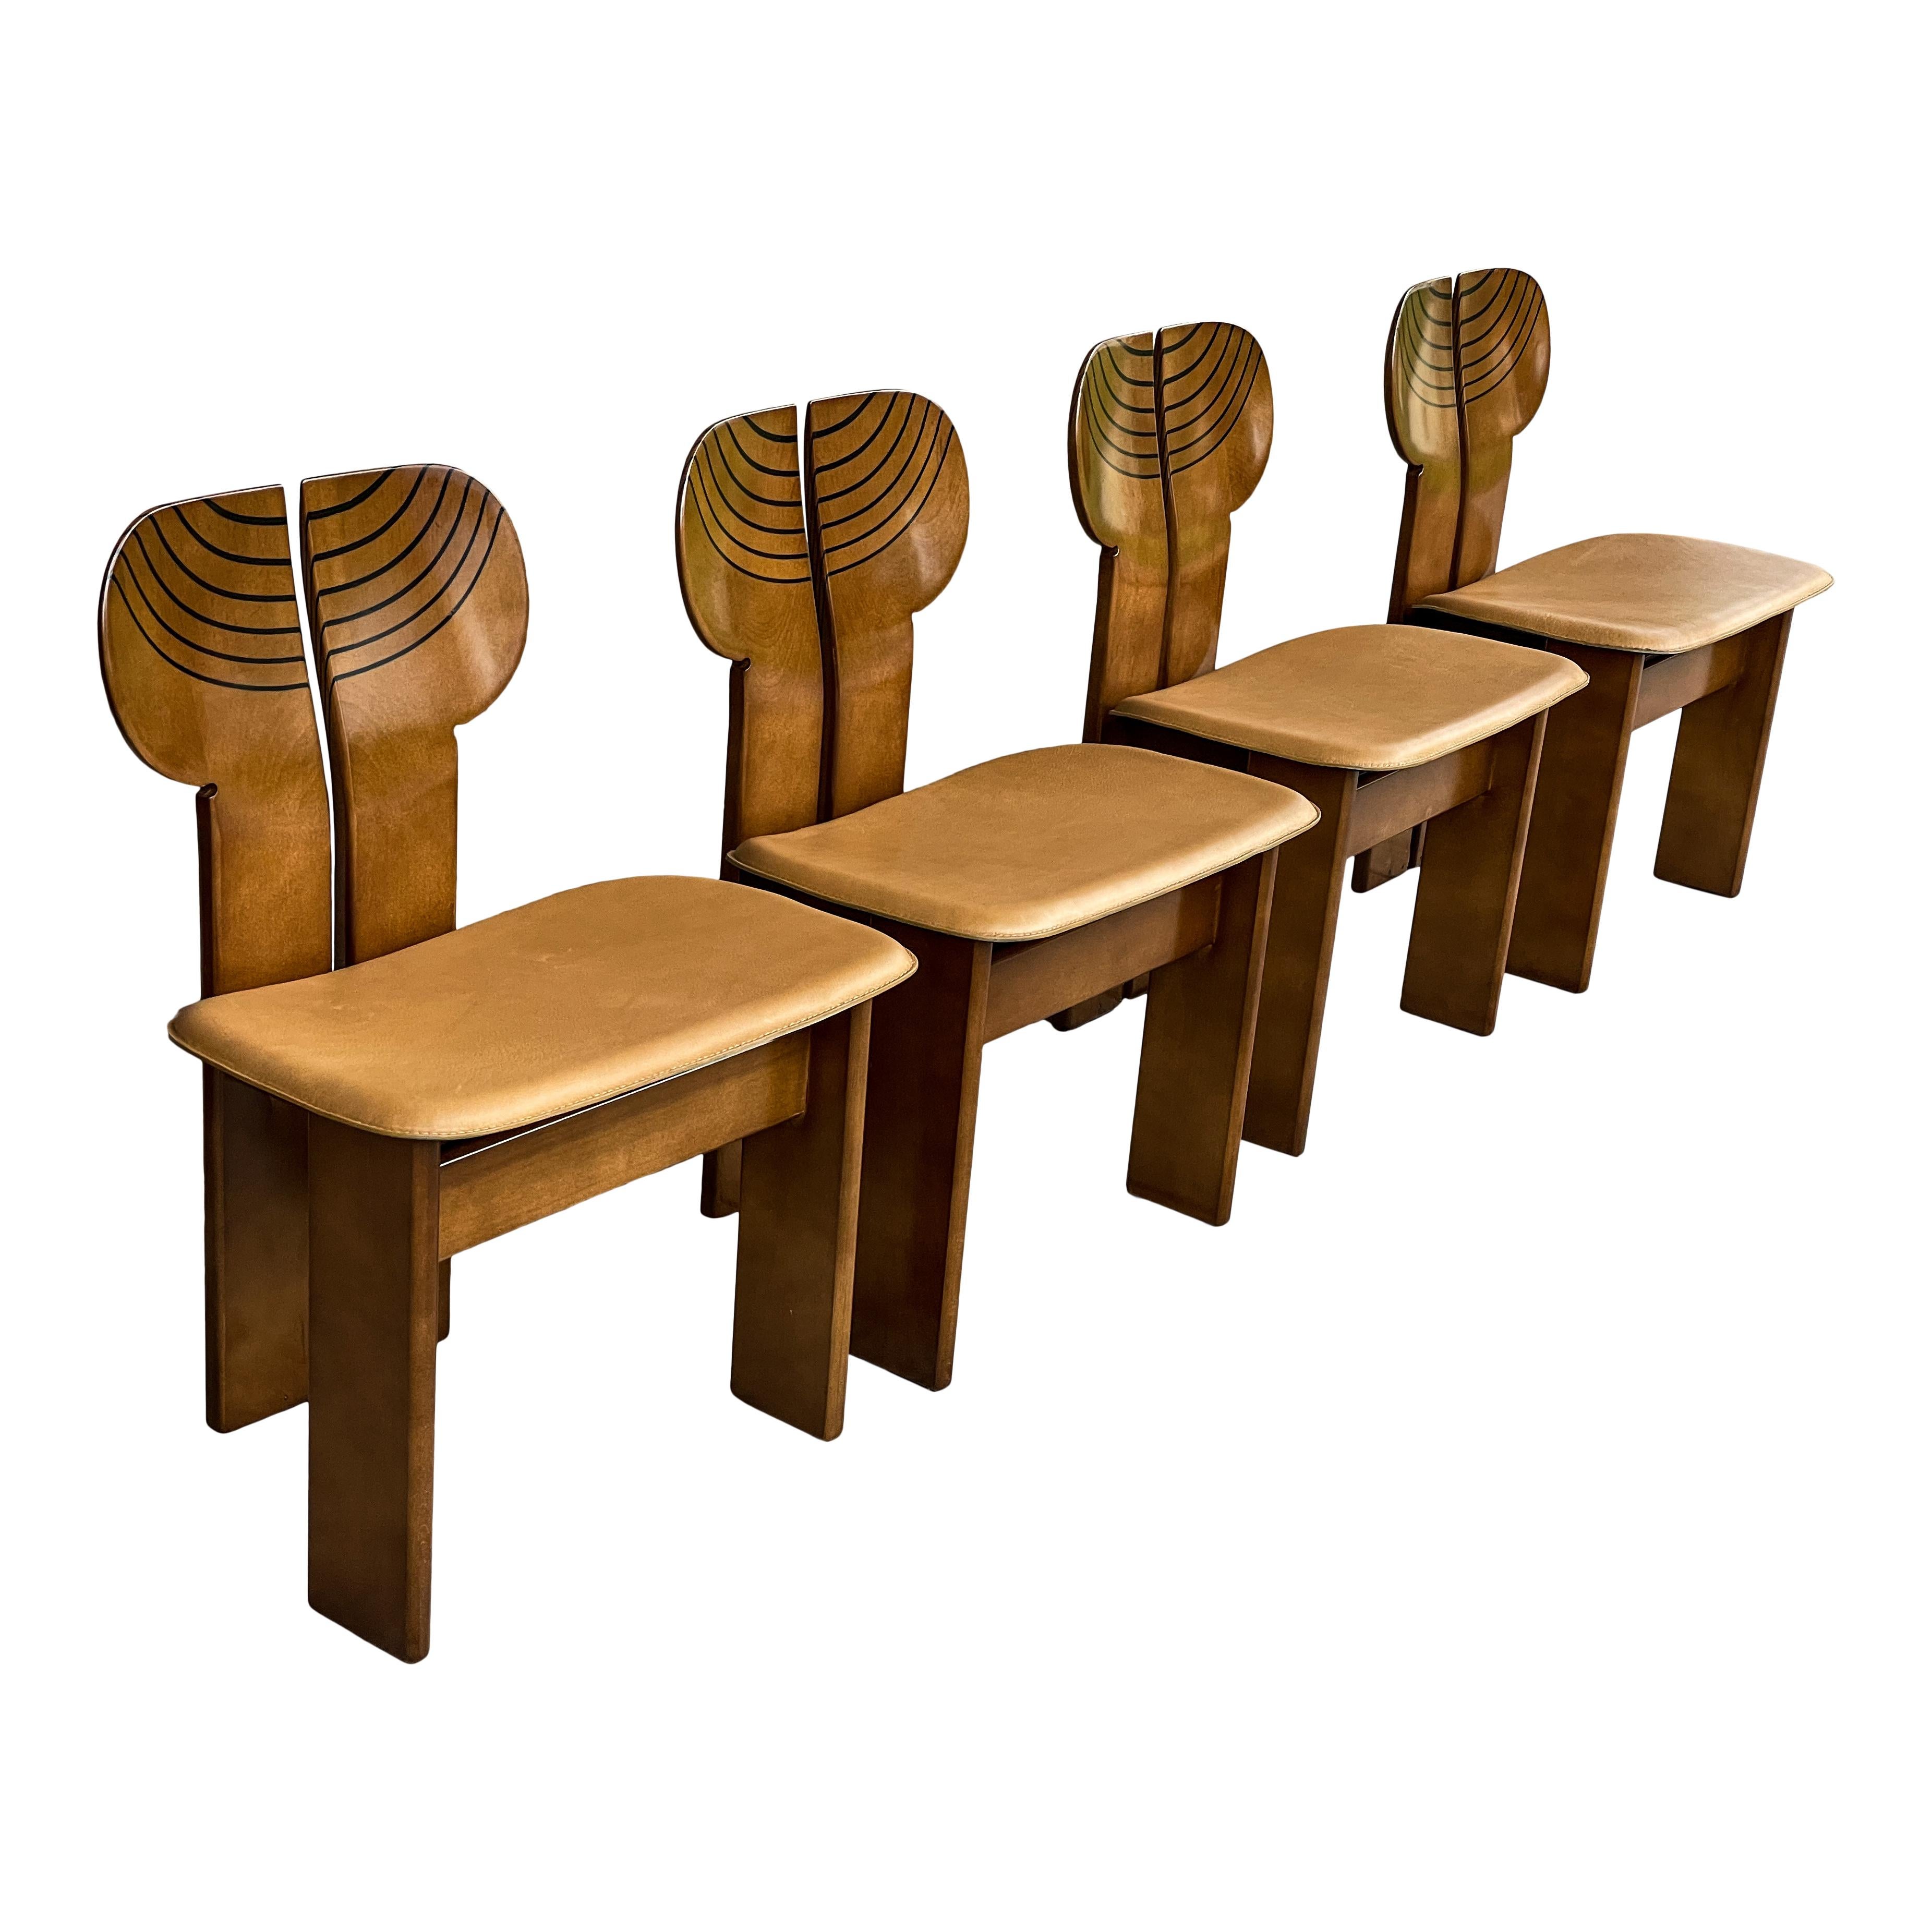 Ensemble de quatre chaises de salle à manger Africa, conçues par Afra et Tobia Scarpa et produites par le fabricant italien Maxalto en 1976.
Ils présentent une structure en bruyère de noyer clair et un siège en cuir cognac.
Entièrement restauré en